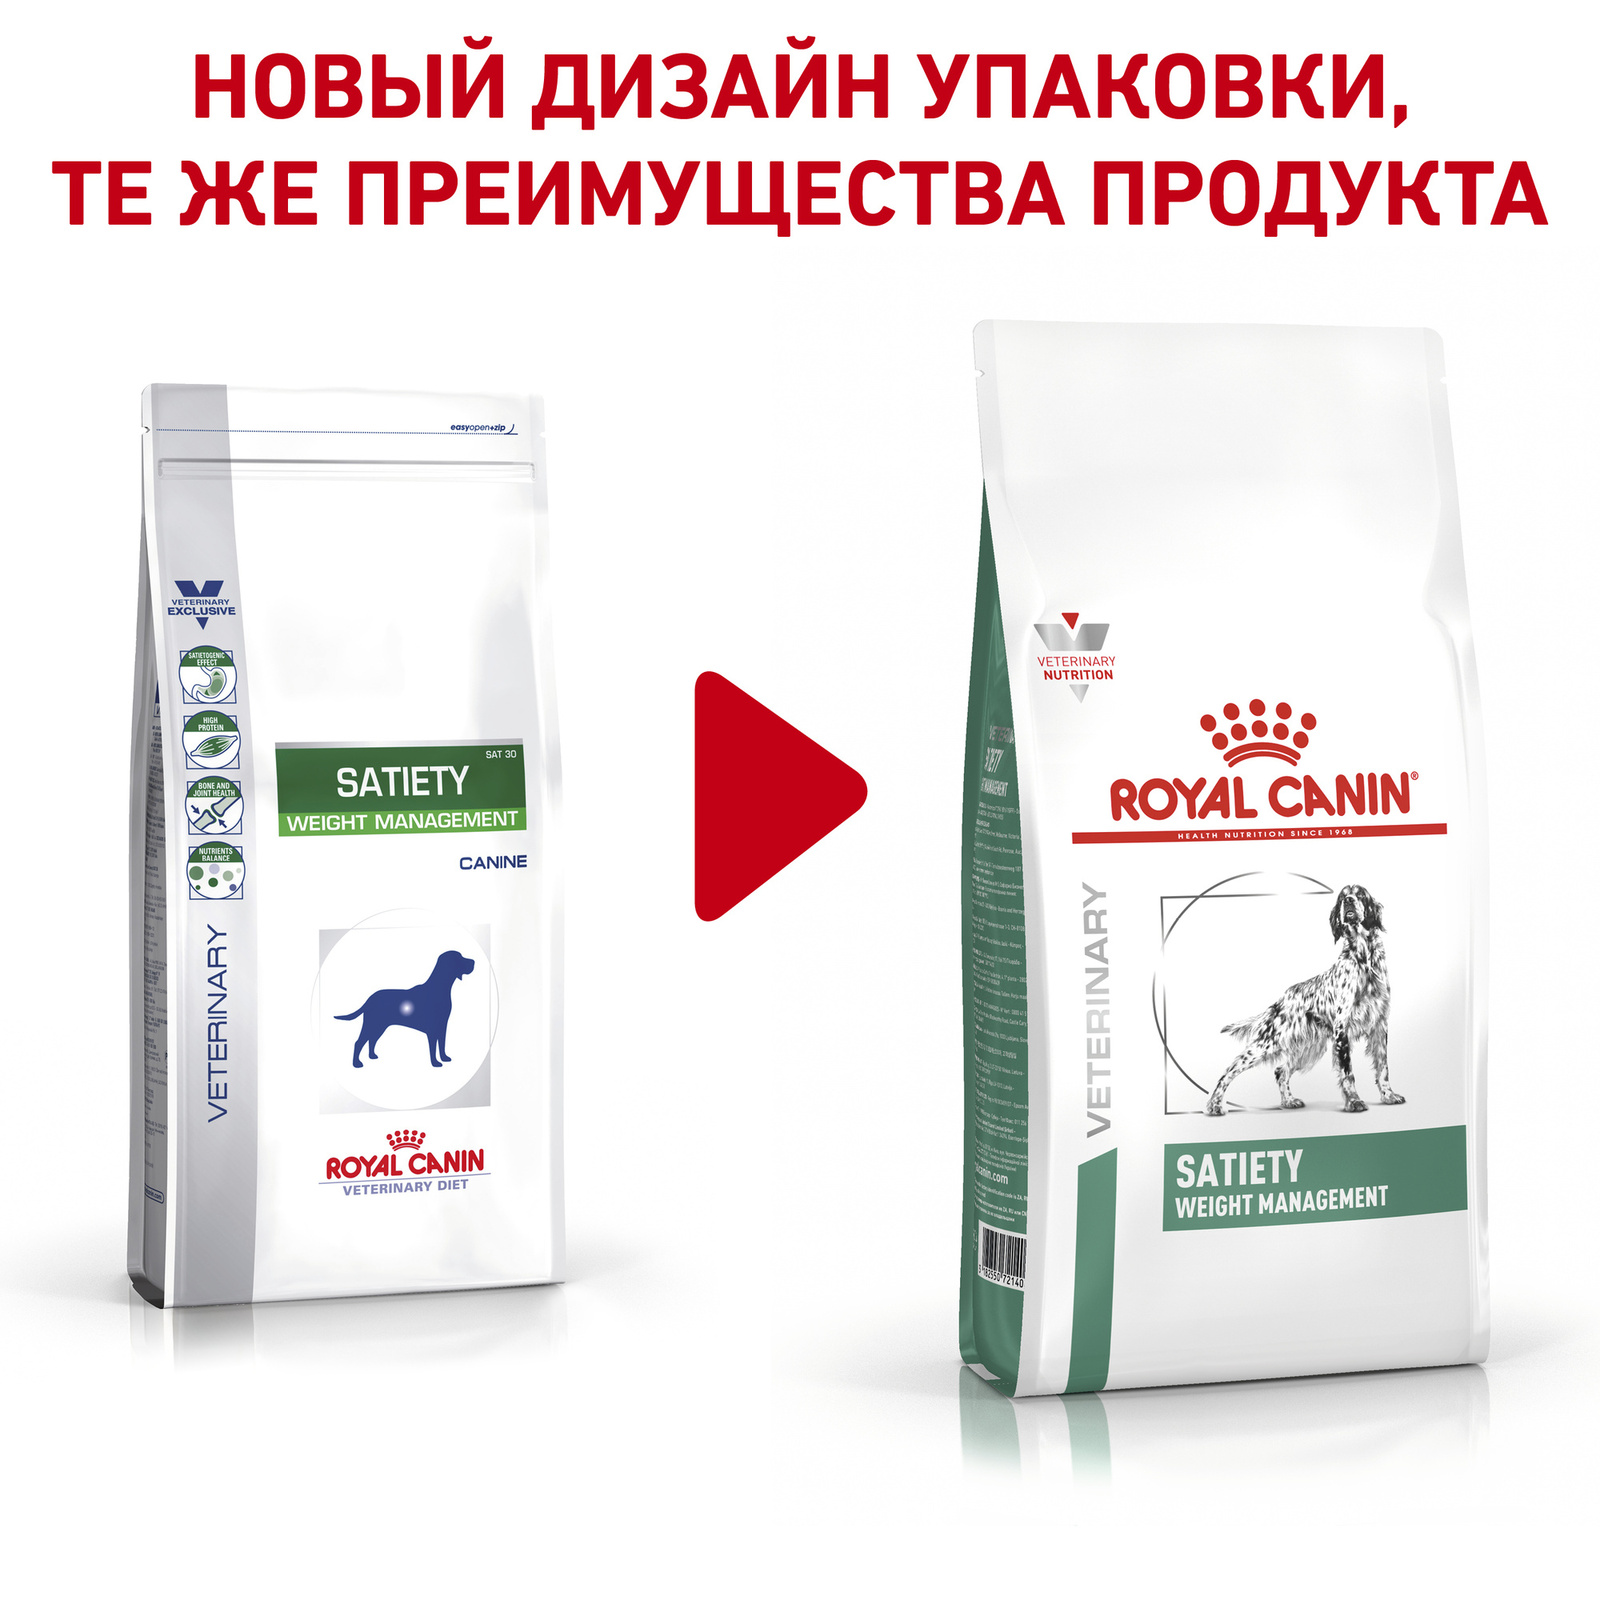 полнорационный диетический, для взрослых собак, рекомендуемый для снижения веса (12 кг) Royal Canin (вет.корма) полнорационный диетический, для взрослых собак, рекомендуемый для снижения веса (12 кг) - фото 2